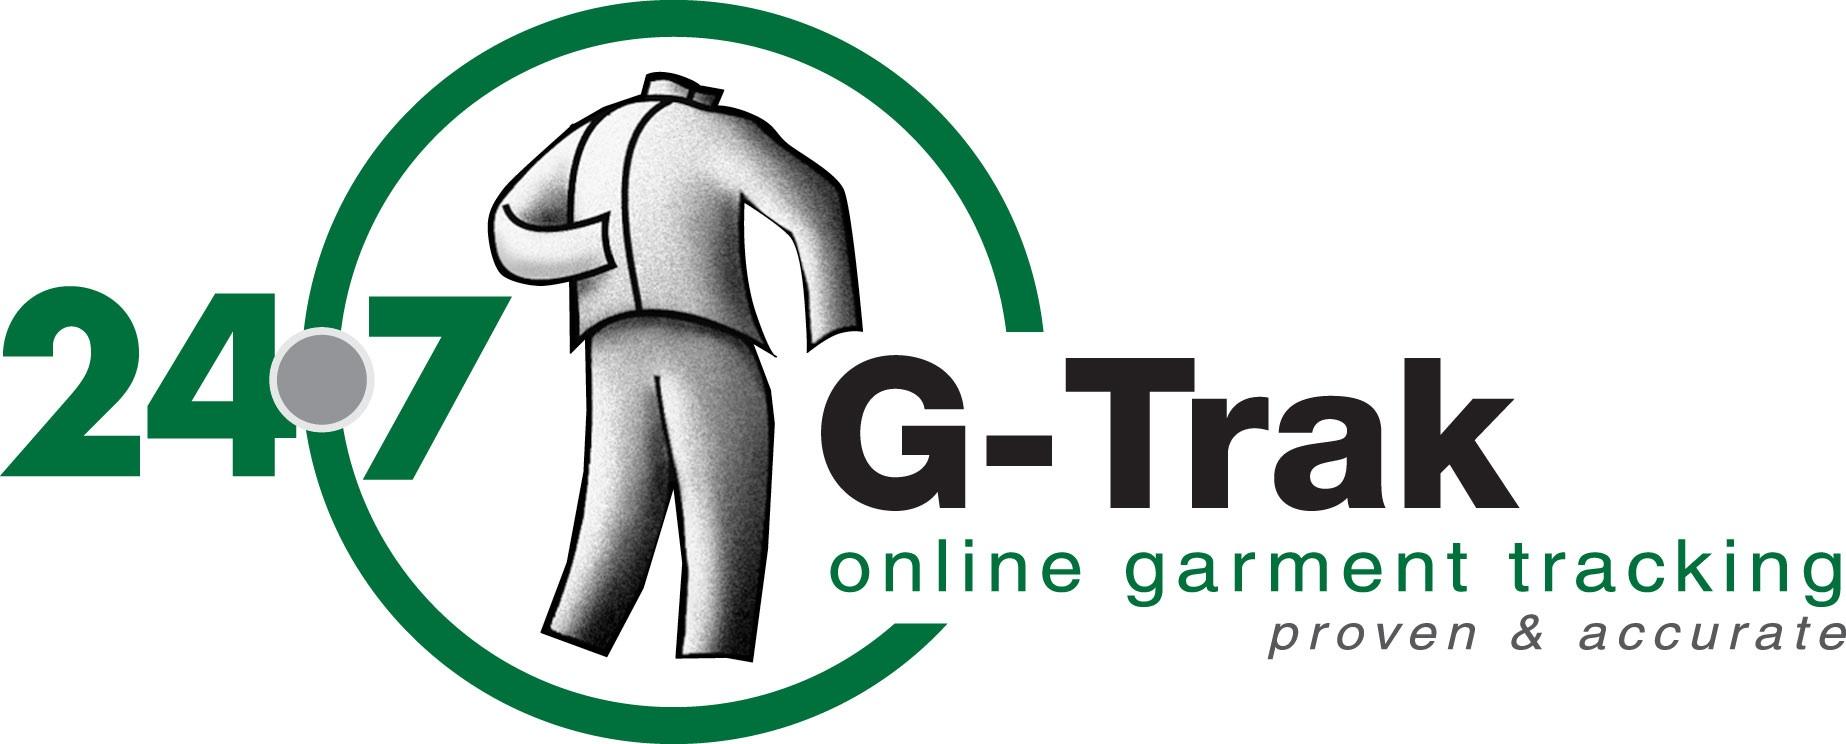 Gallagher G Logo - Gallagher G-Trak Logo - Gallagher Uniform